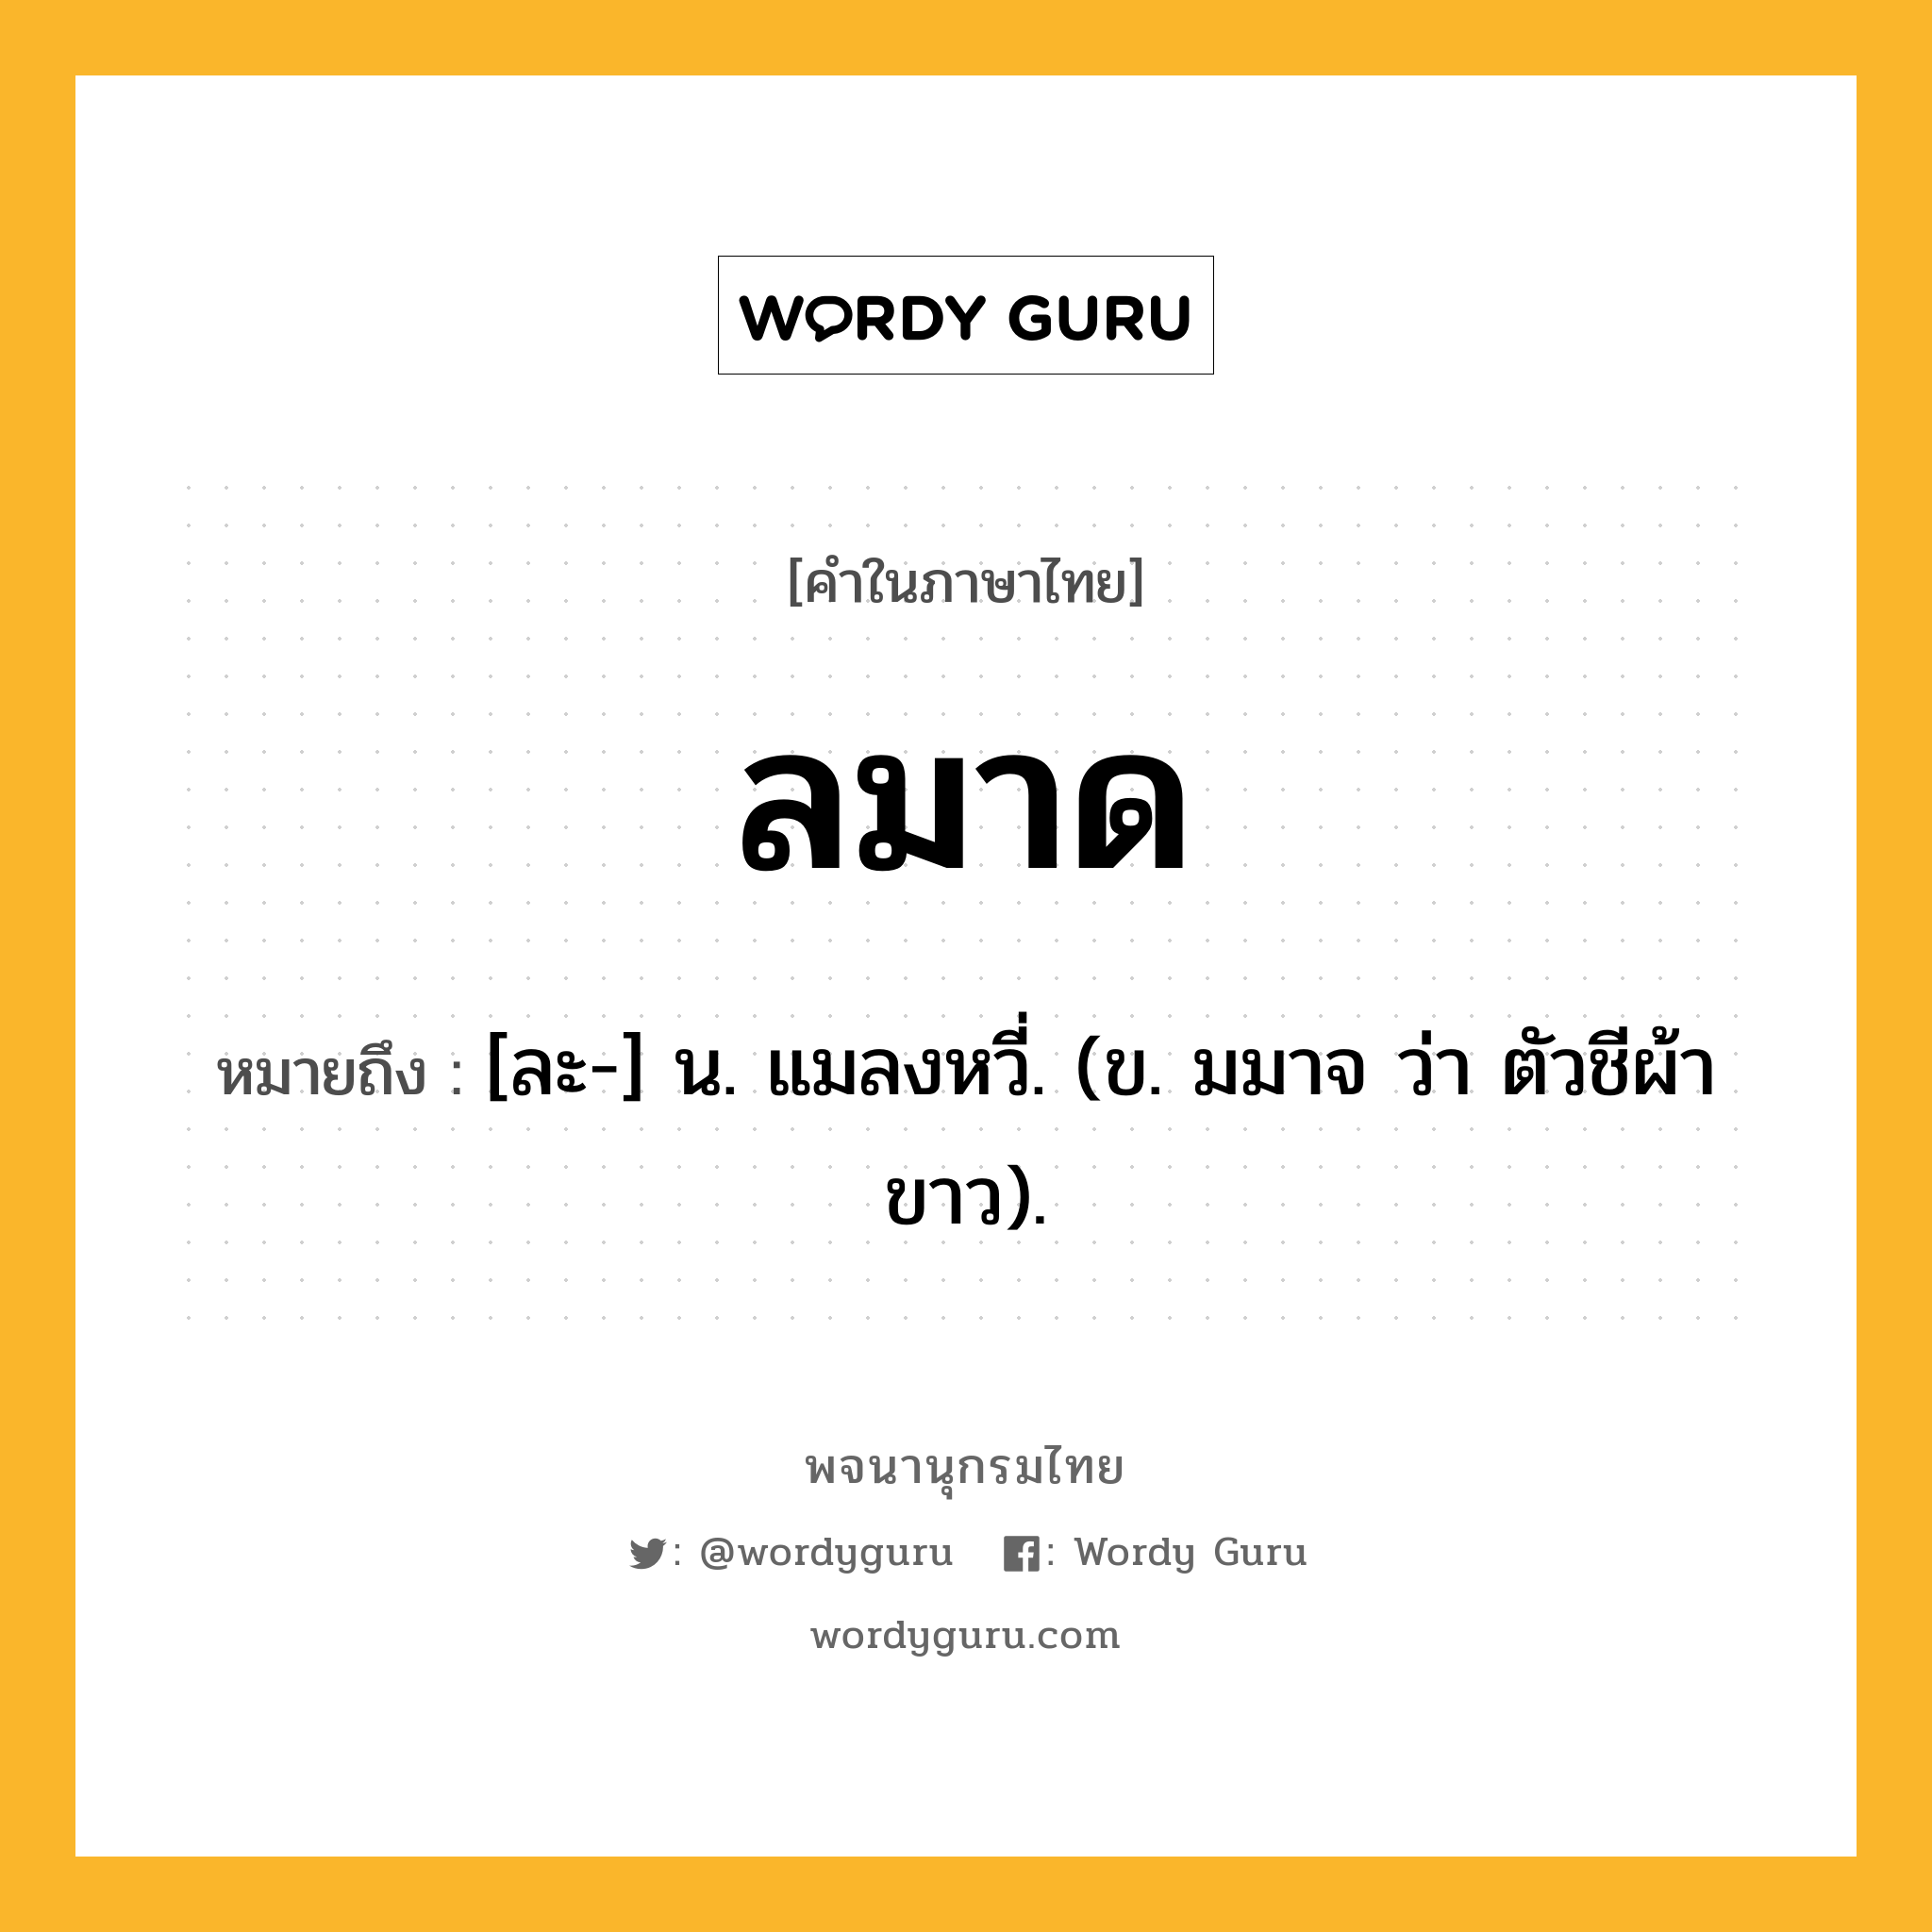 ลมาด ความหมาย หมายถึงอะไร?, คำในภาษาไทย ลมาด หมายถึง [ละ-] น. แมลงหวี่. (ข. มมาจ ว่า ตัวชีผ้าขาว).